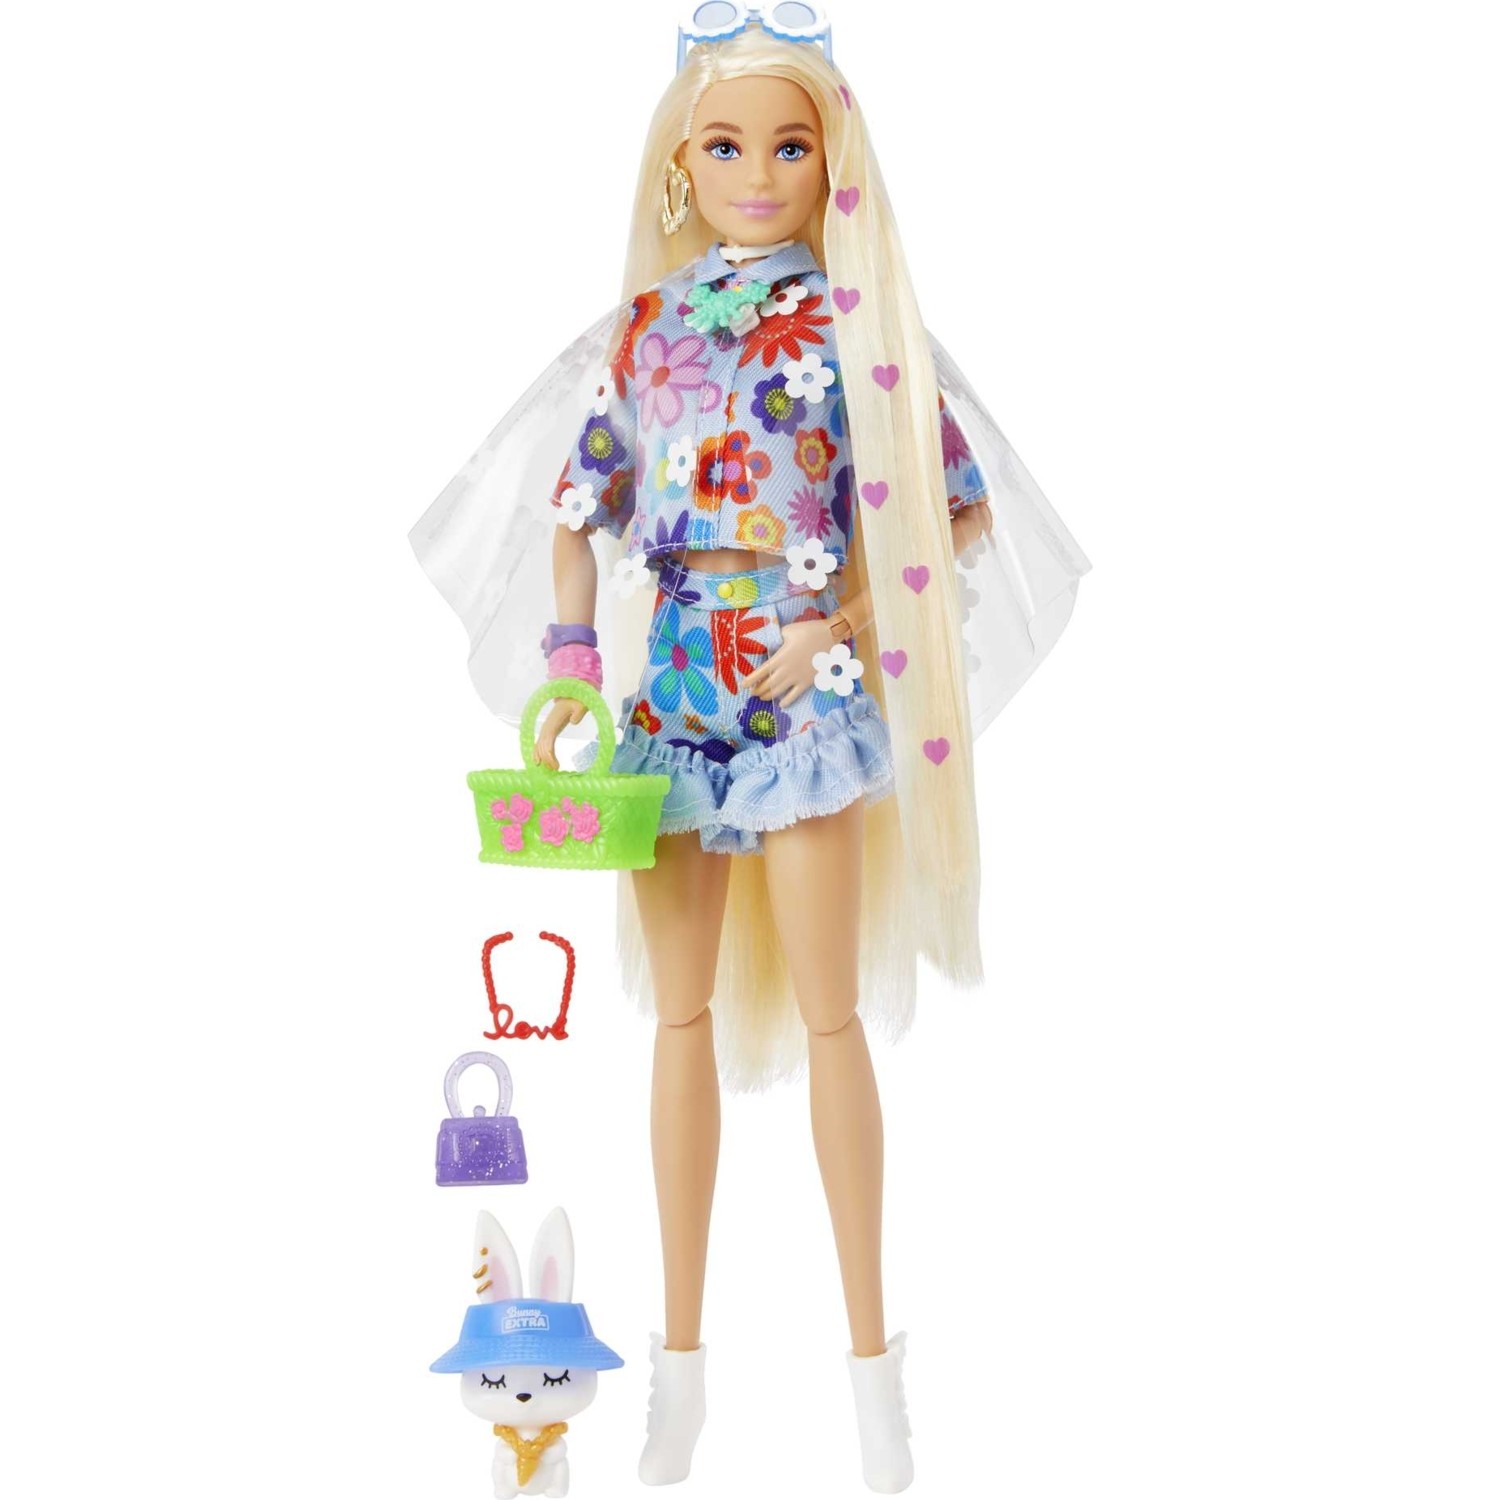 Кукла Barbie Экстра кукла в синей юбке с гибкими суставами HDJ45 куклы с нарядами барби 1